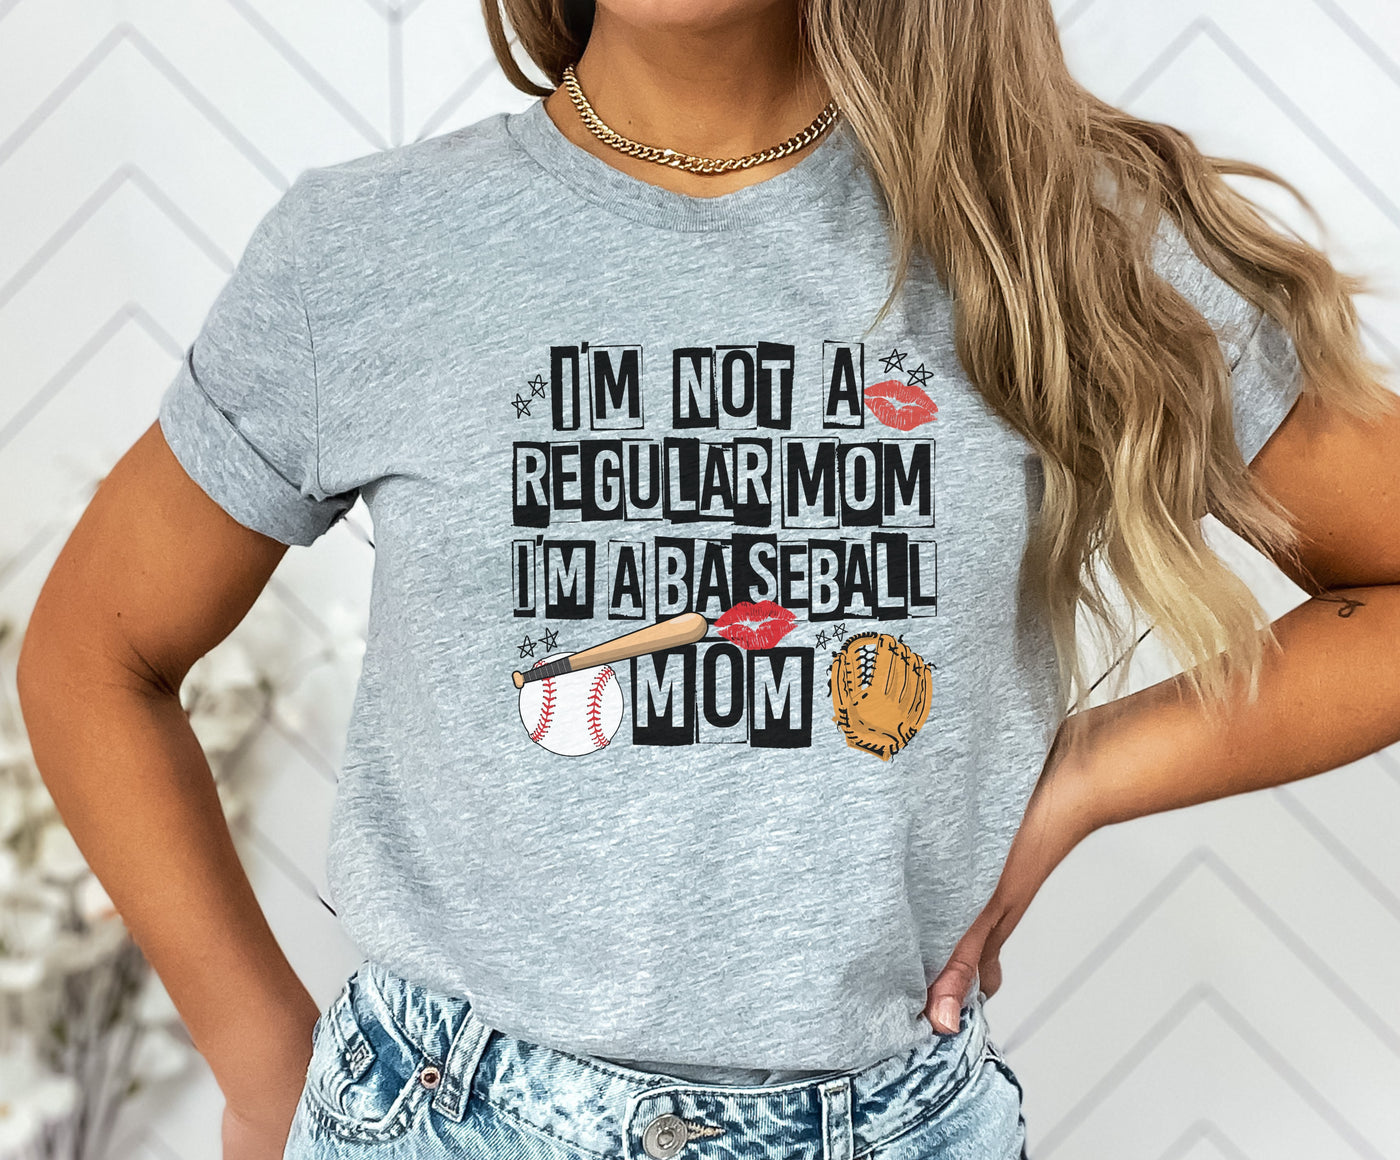 I’m not a regular mom, I’m a baseball mom (RTS 1/16)